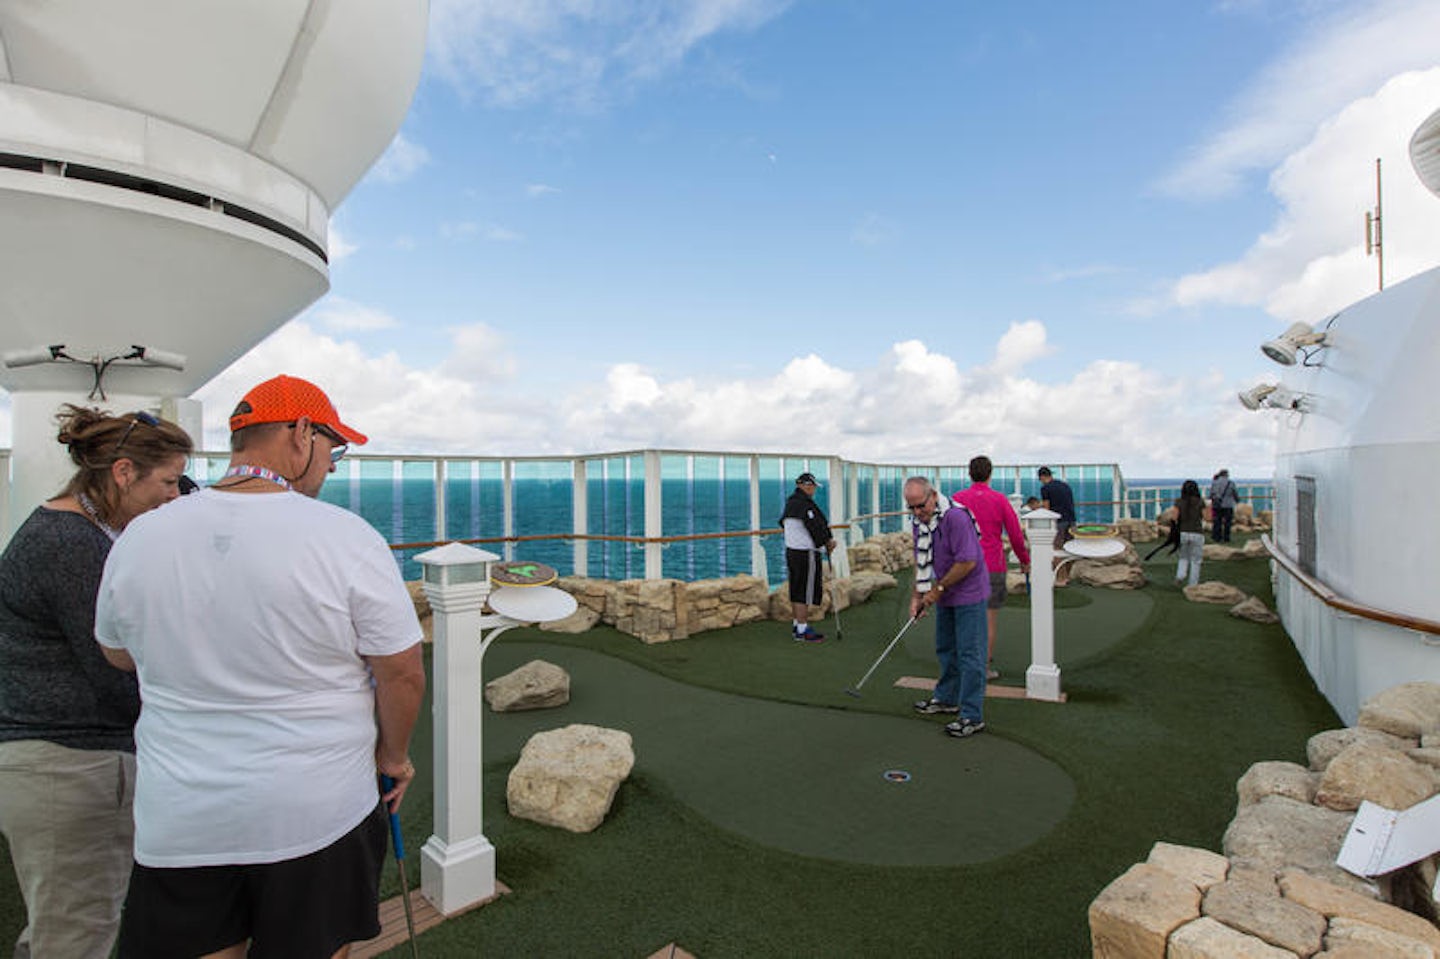 Mini Golf on Radiance of the Seas